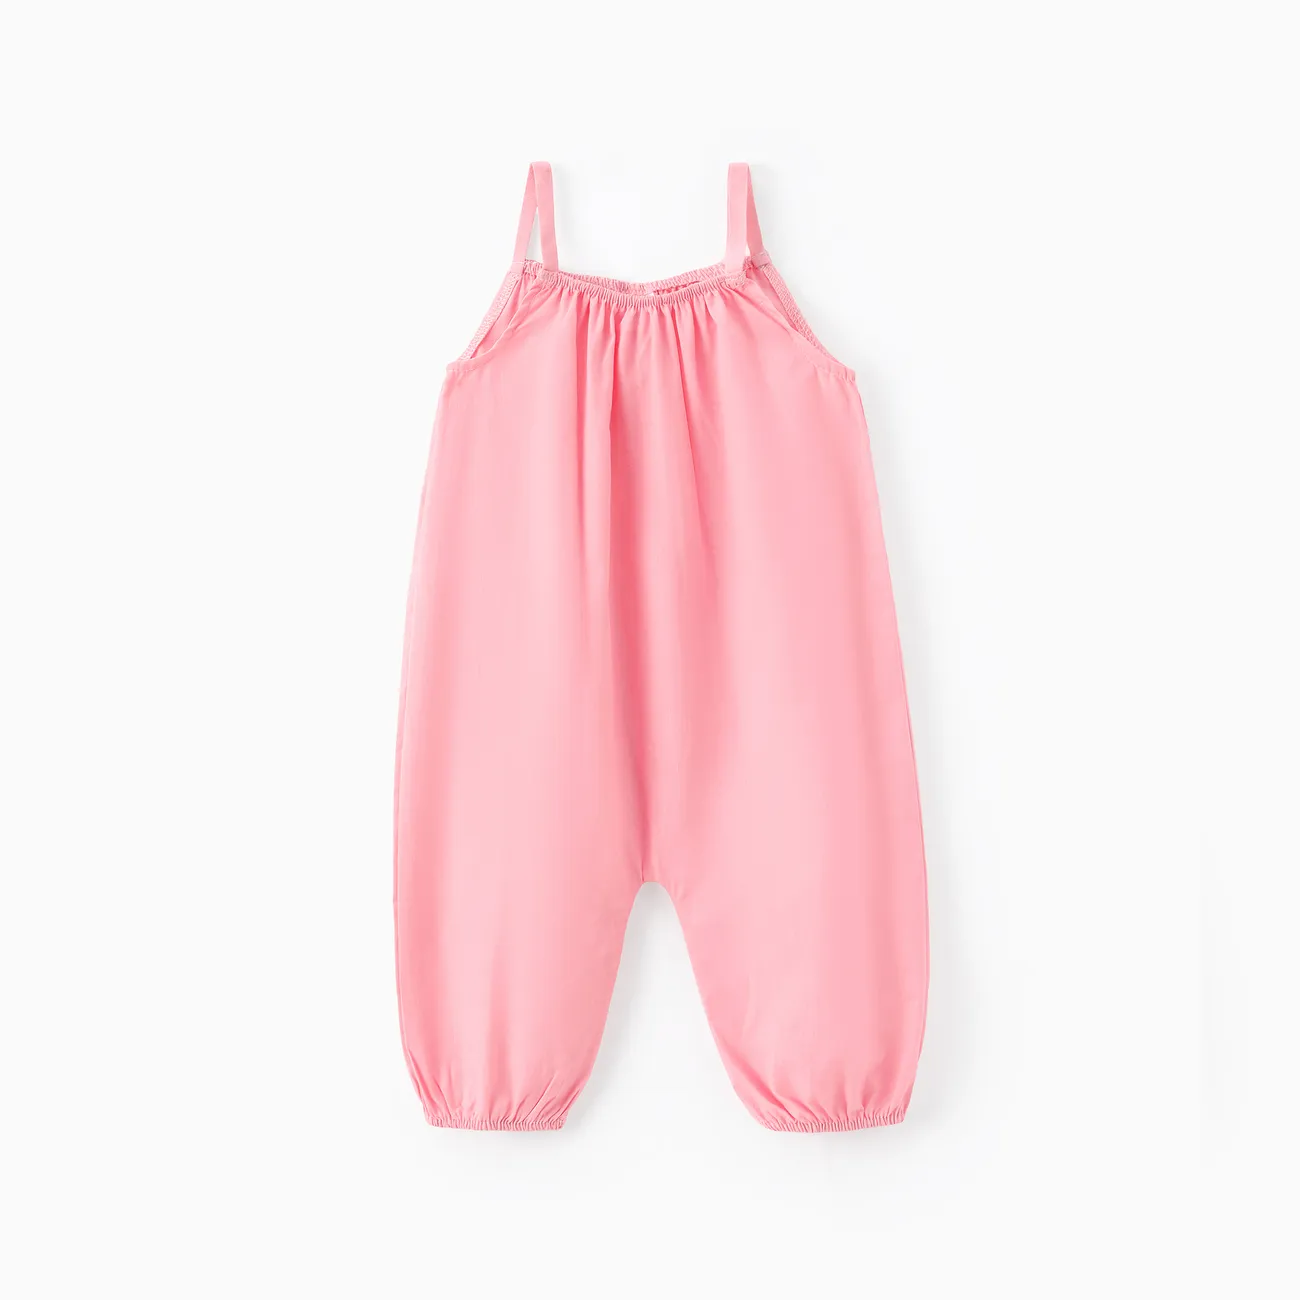 嬰兒 中性 背心 基礎 連身褲 粉色 big image 1